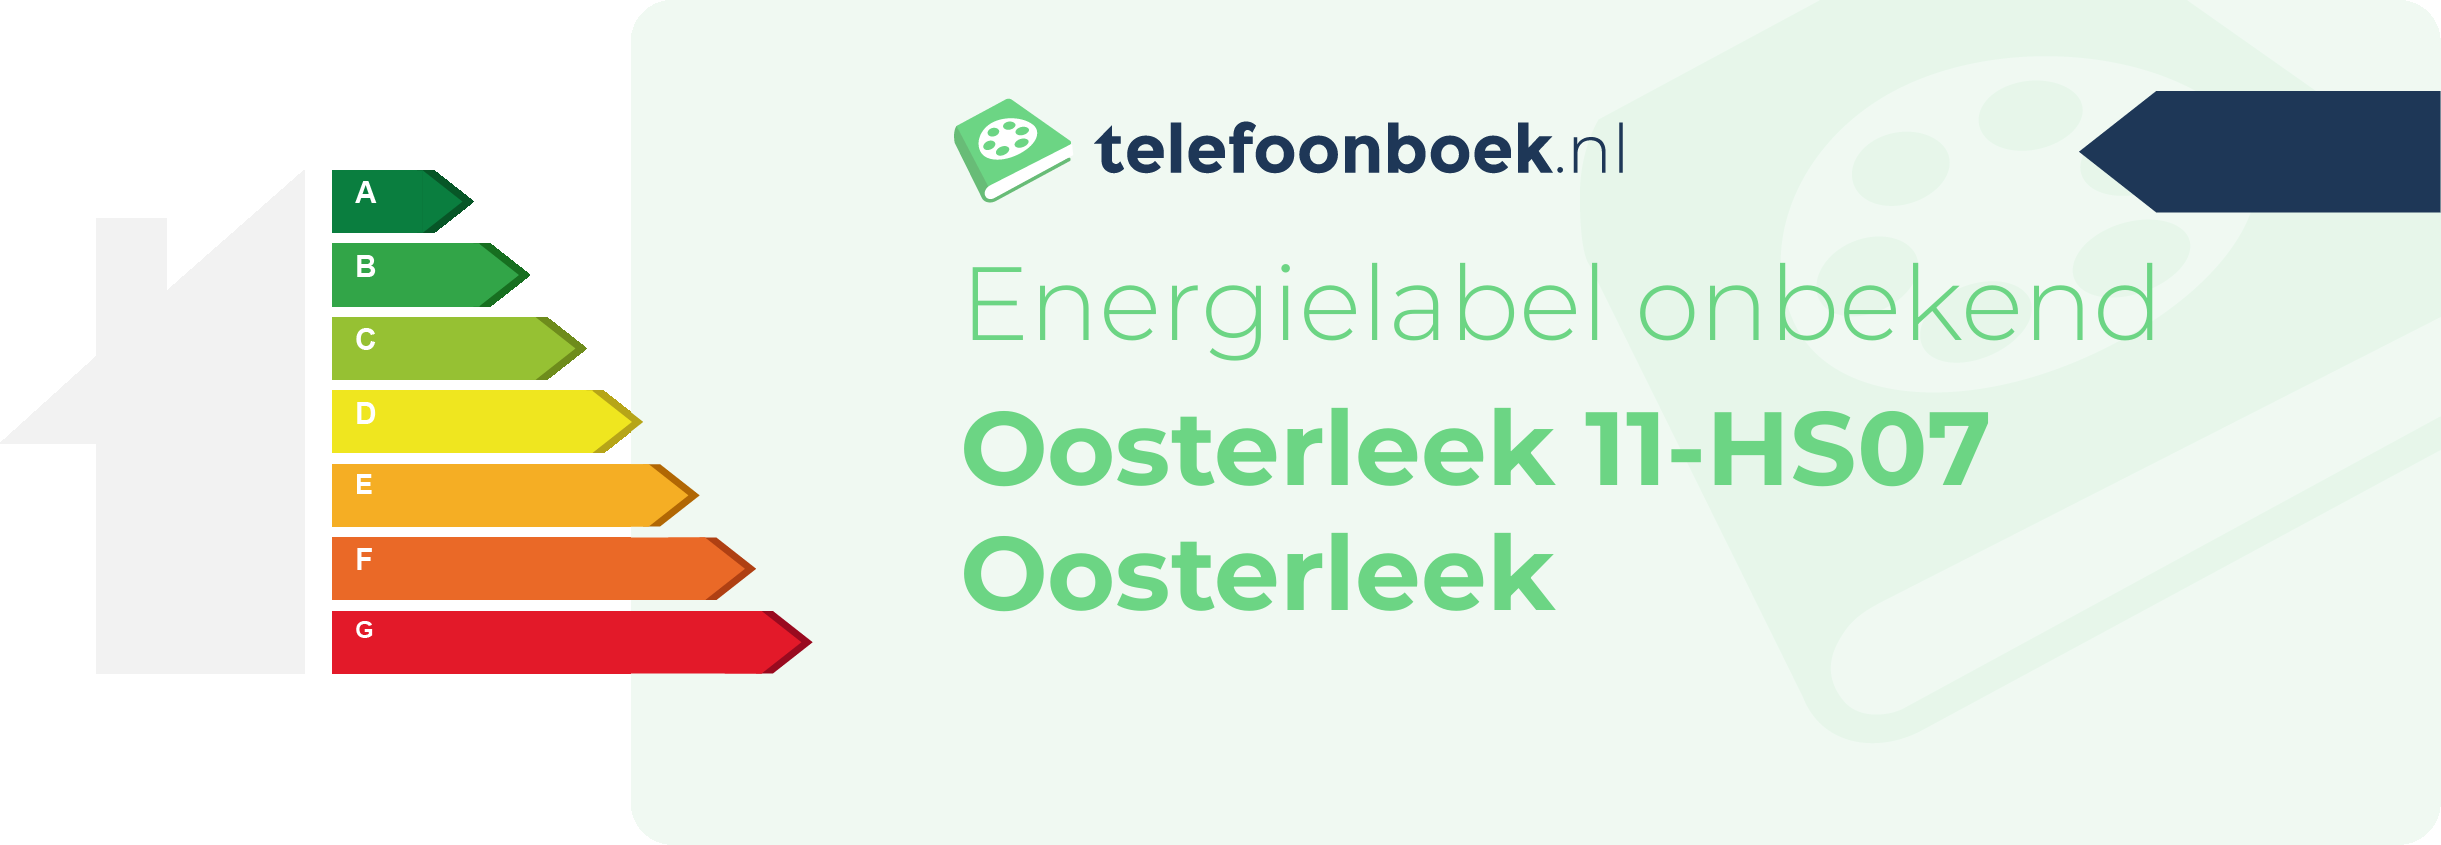 Energielabel Oosterleek 11-HS07 Oosterleek